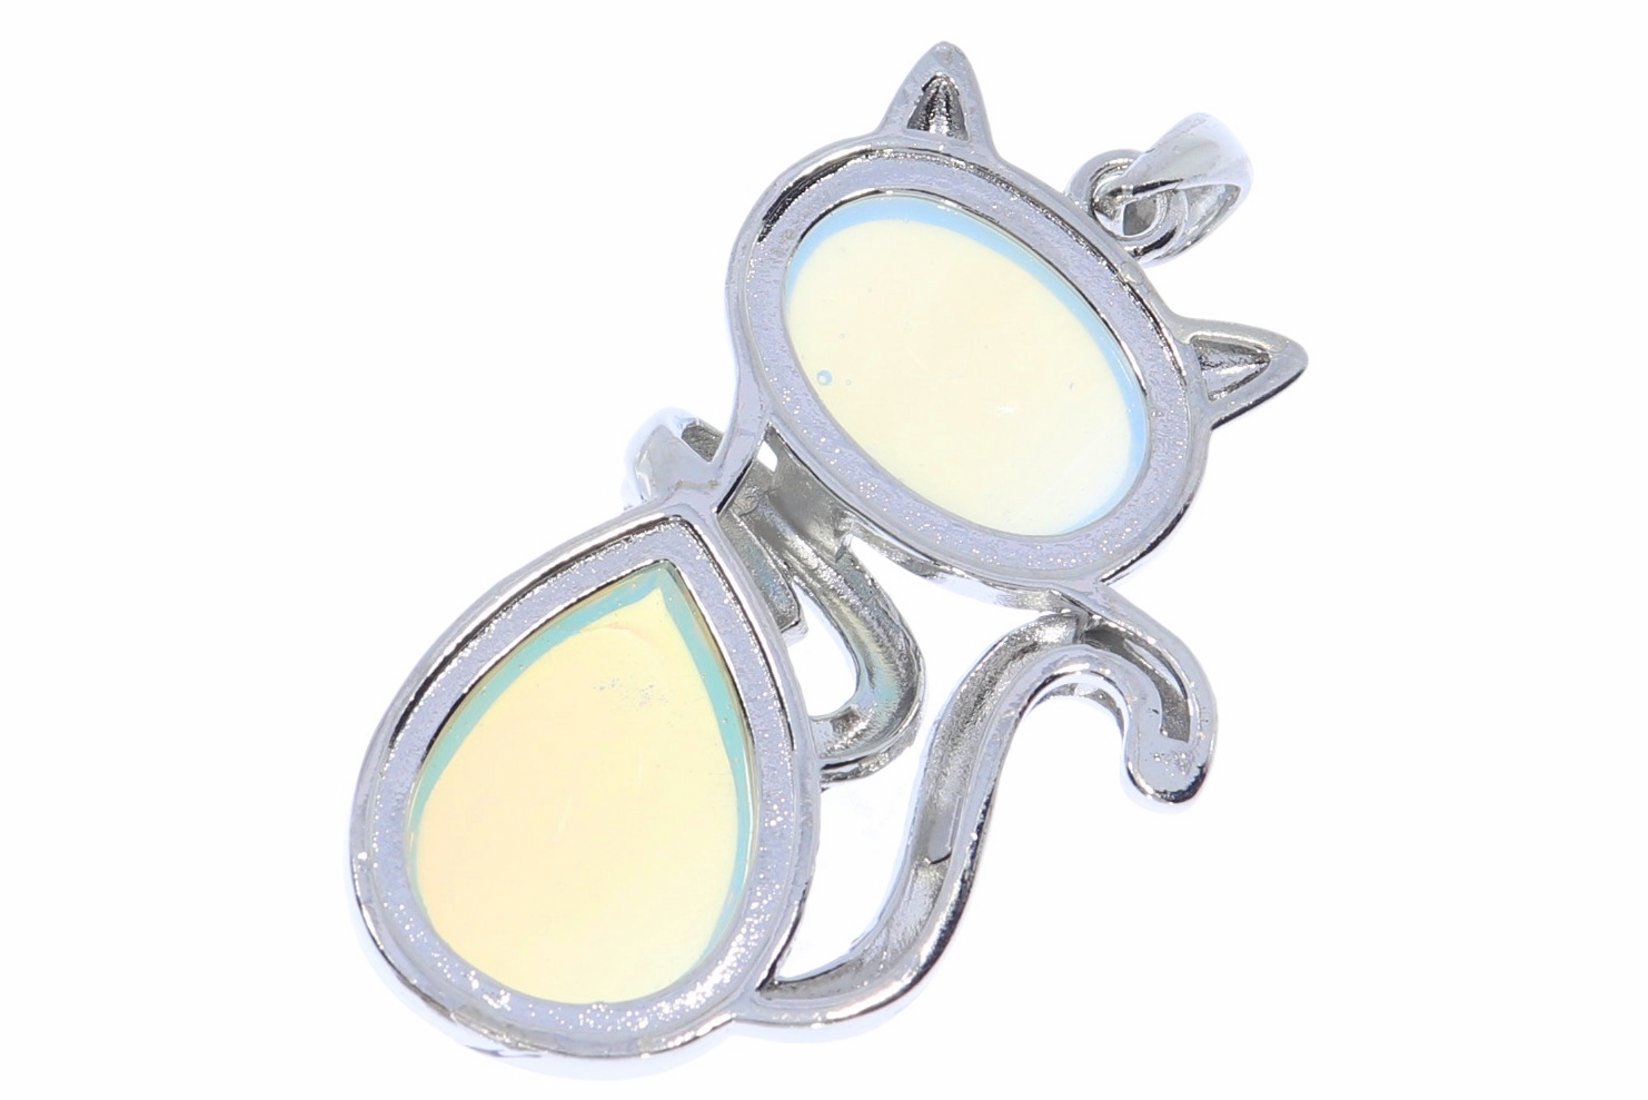 Opal glas Katze Schmuck Anhänger mit Öse silber farben 45x28mm  HS359